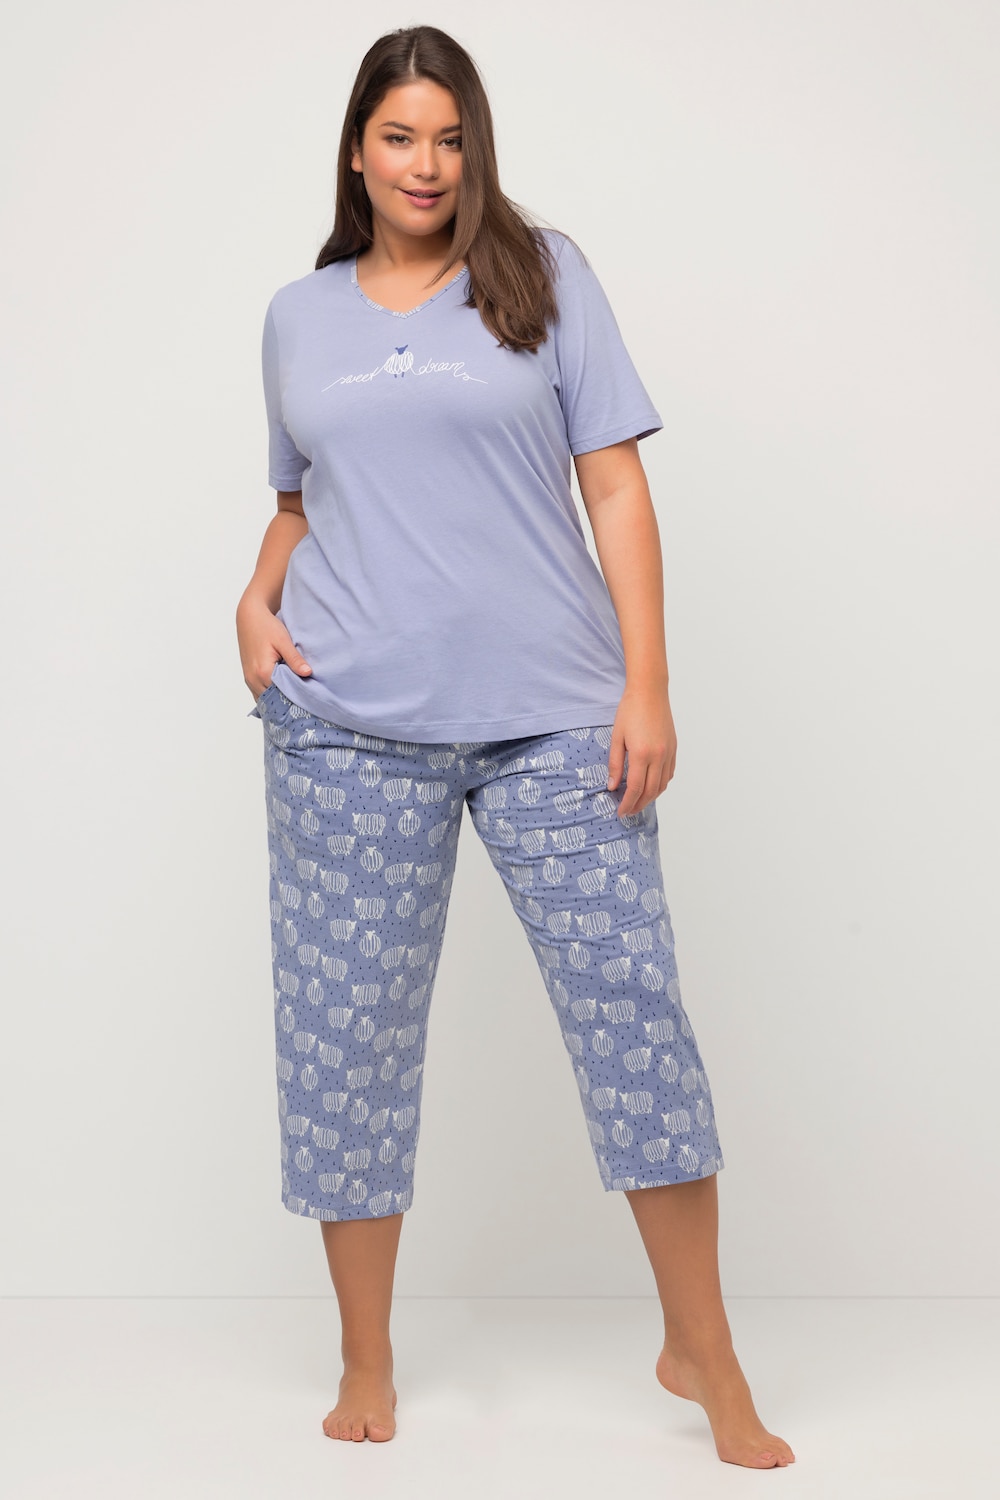 Grote Maten pyjama shorts, Dames, blauw, Maat: 50/52, Katoen, Ulla Popken